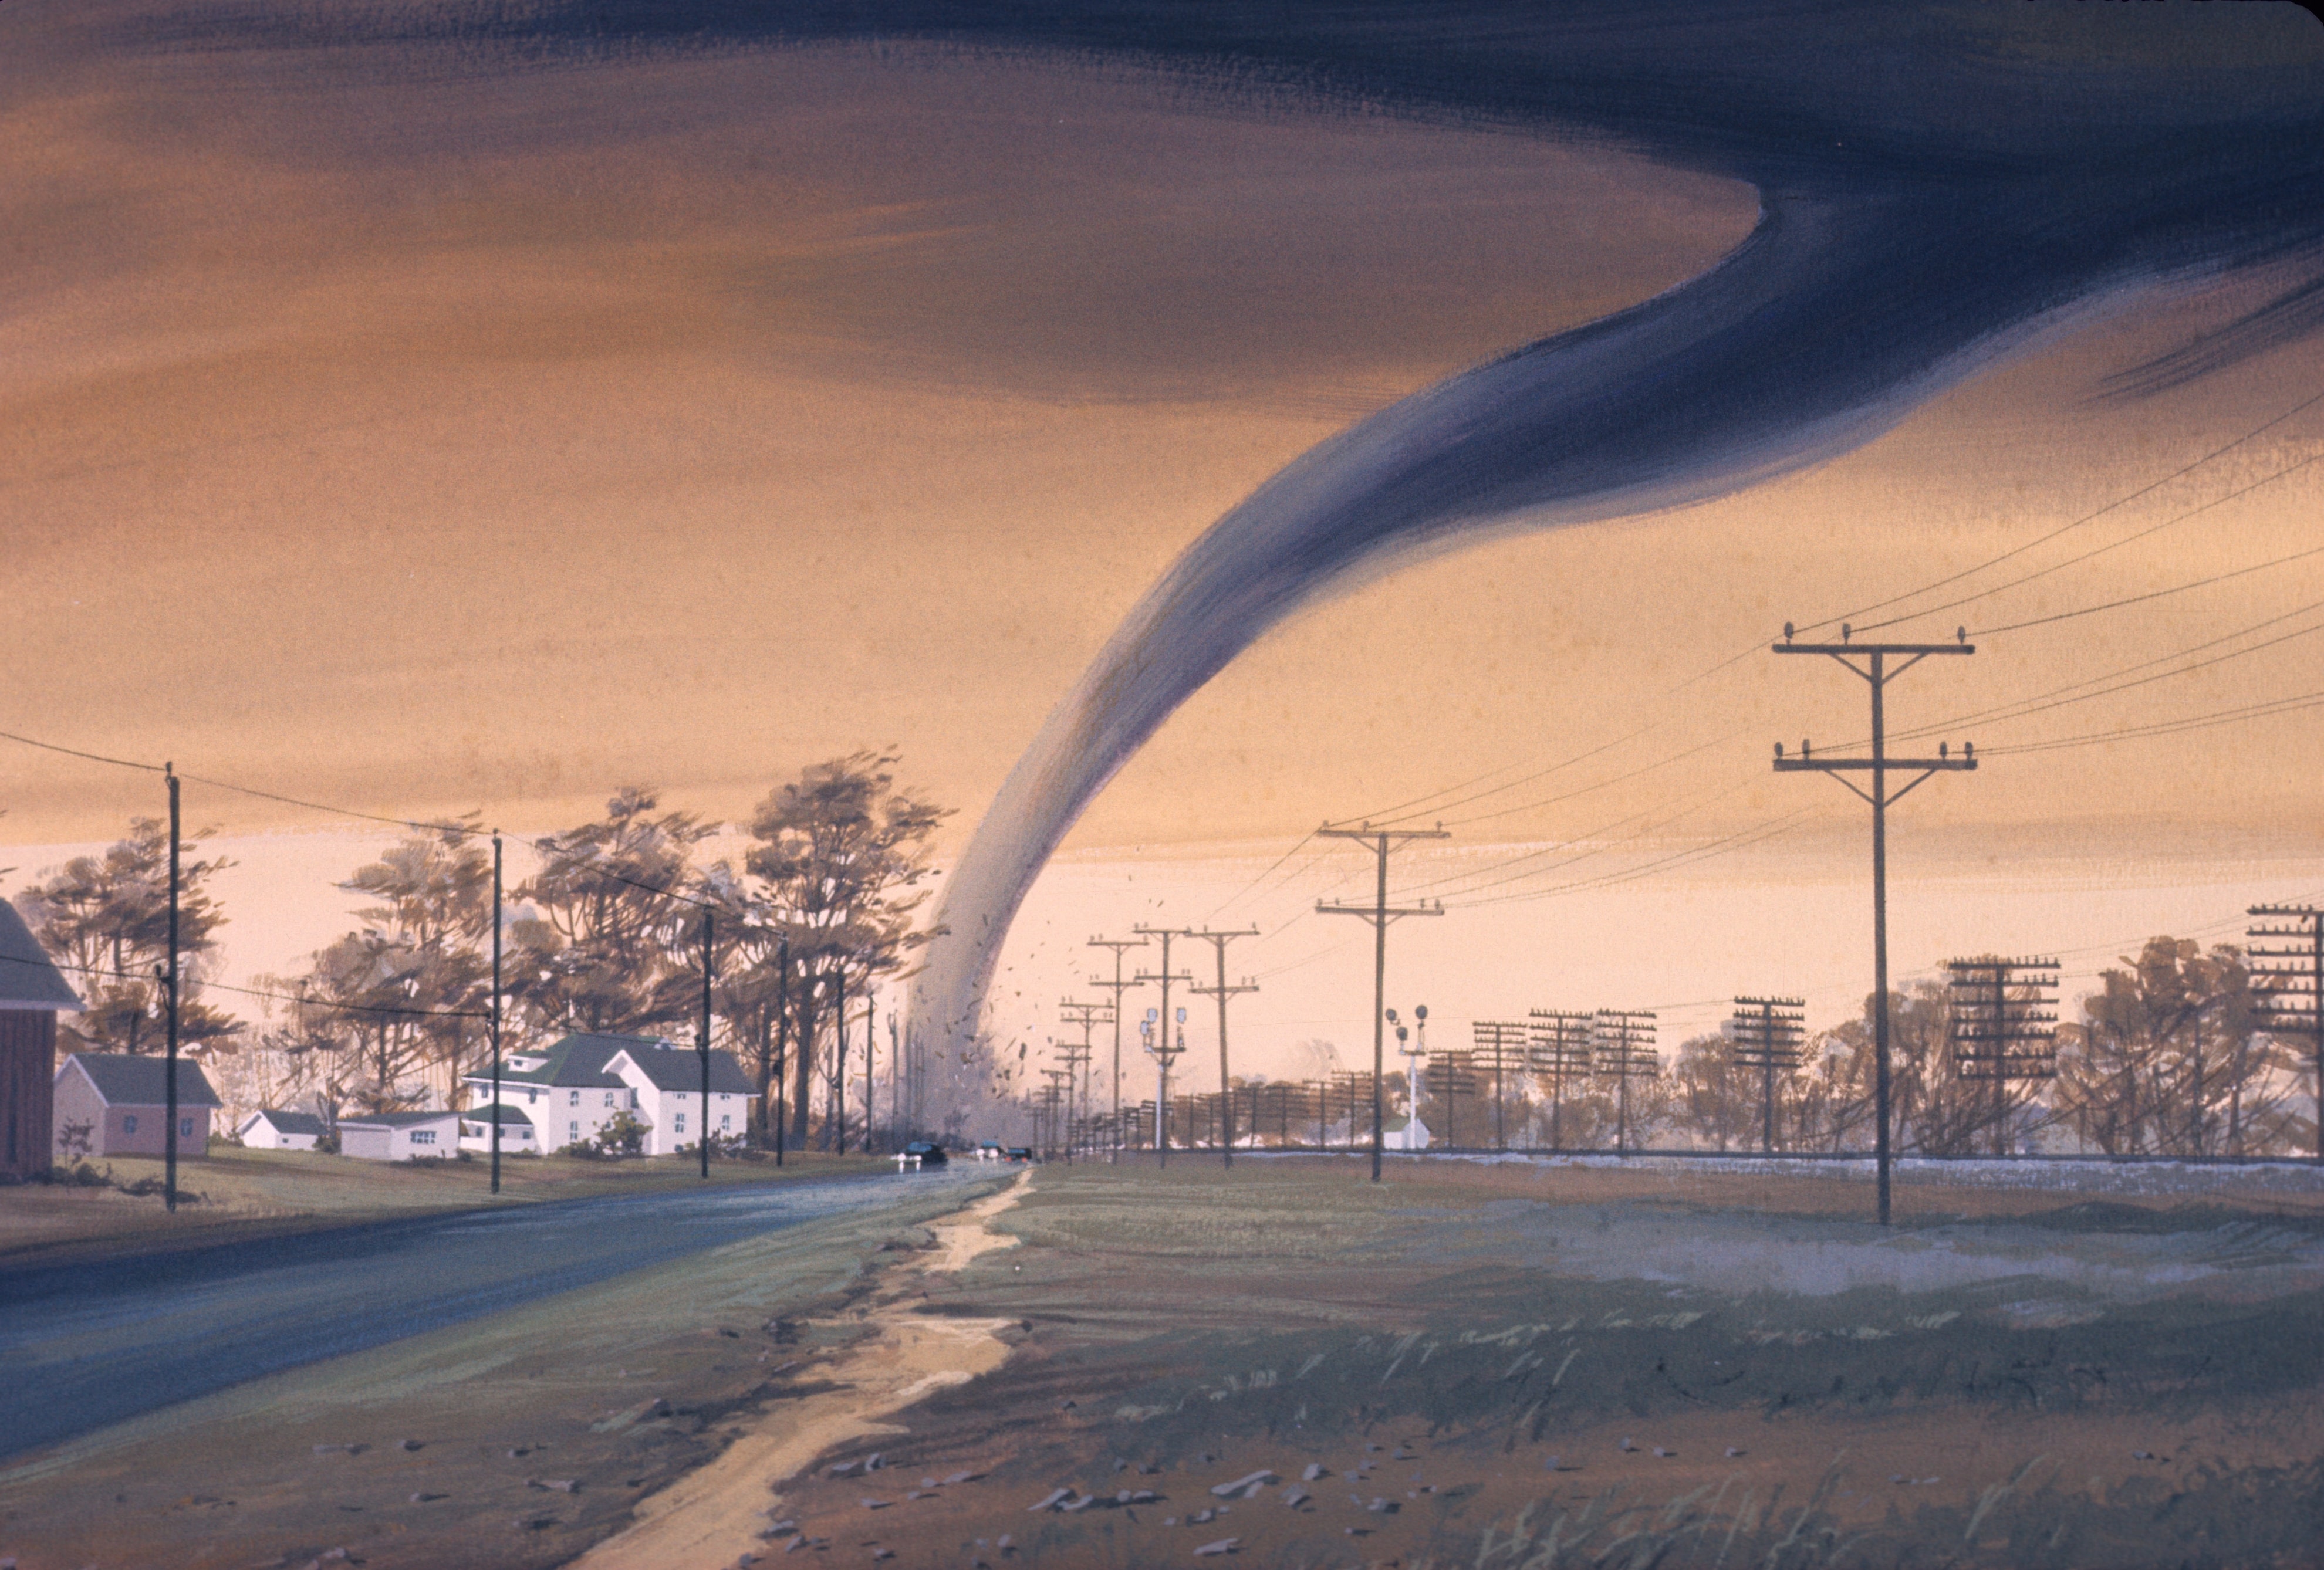 Artist's rendering of tornado in residential area; image by NOAA, via Unsplash.com.